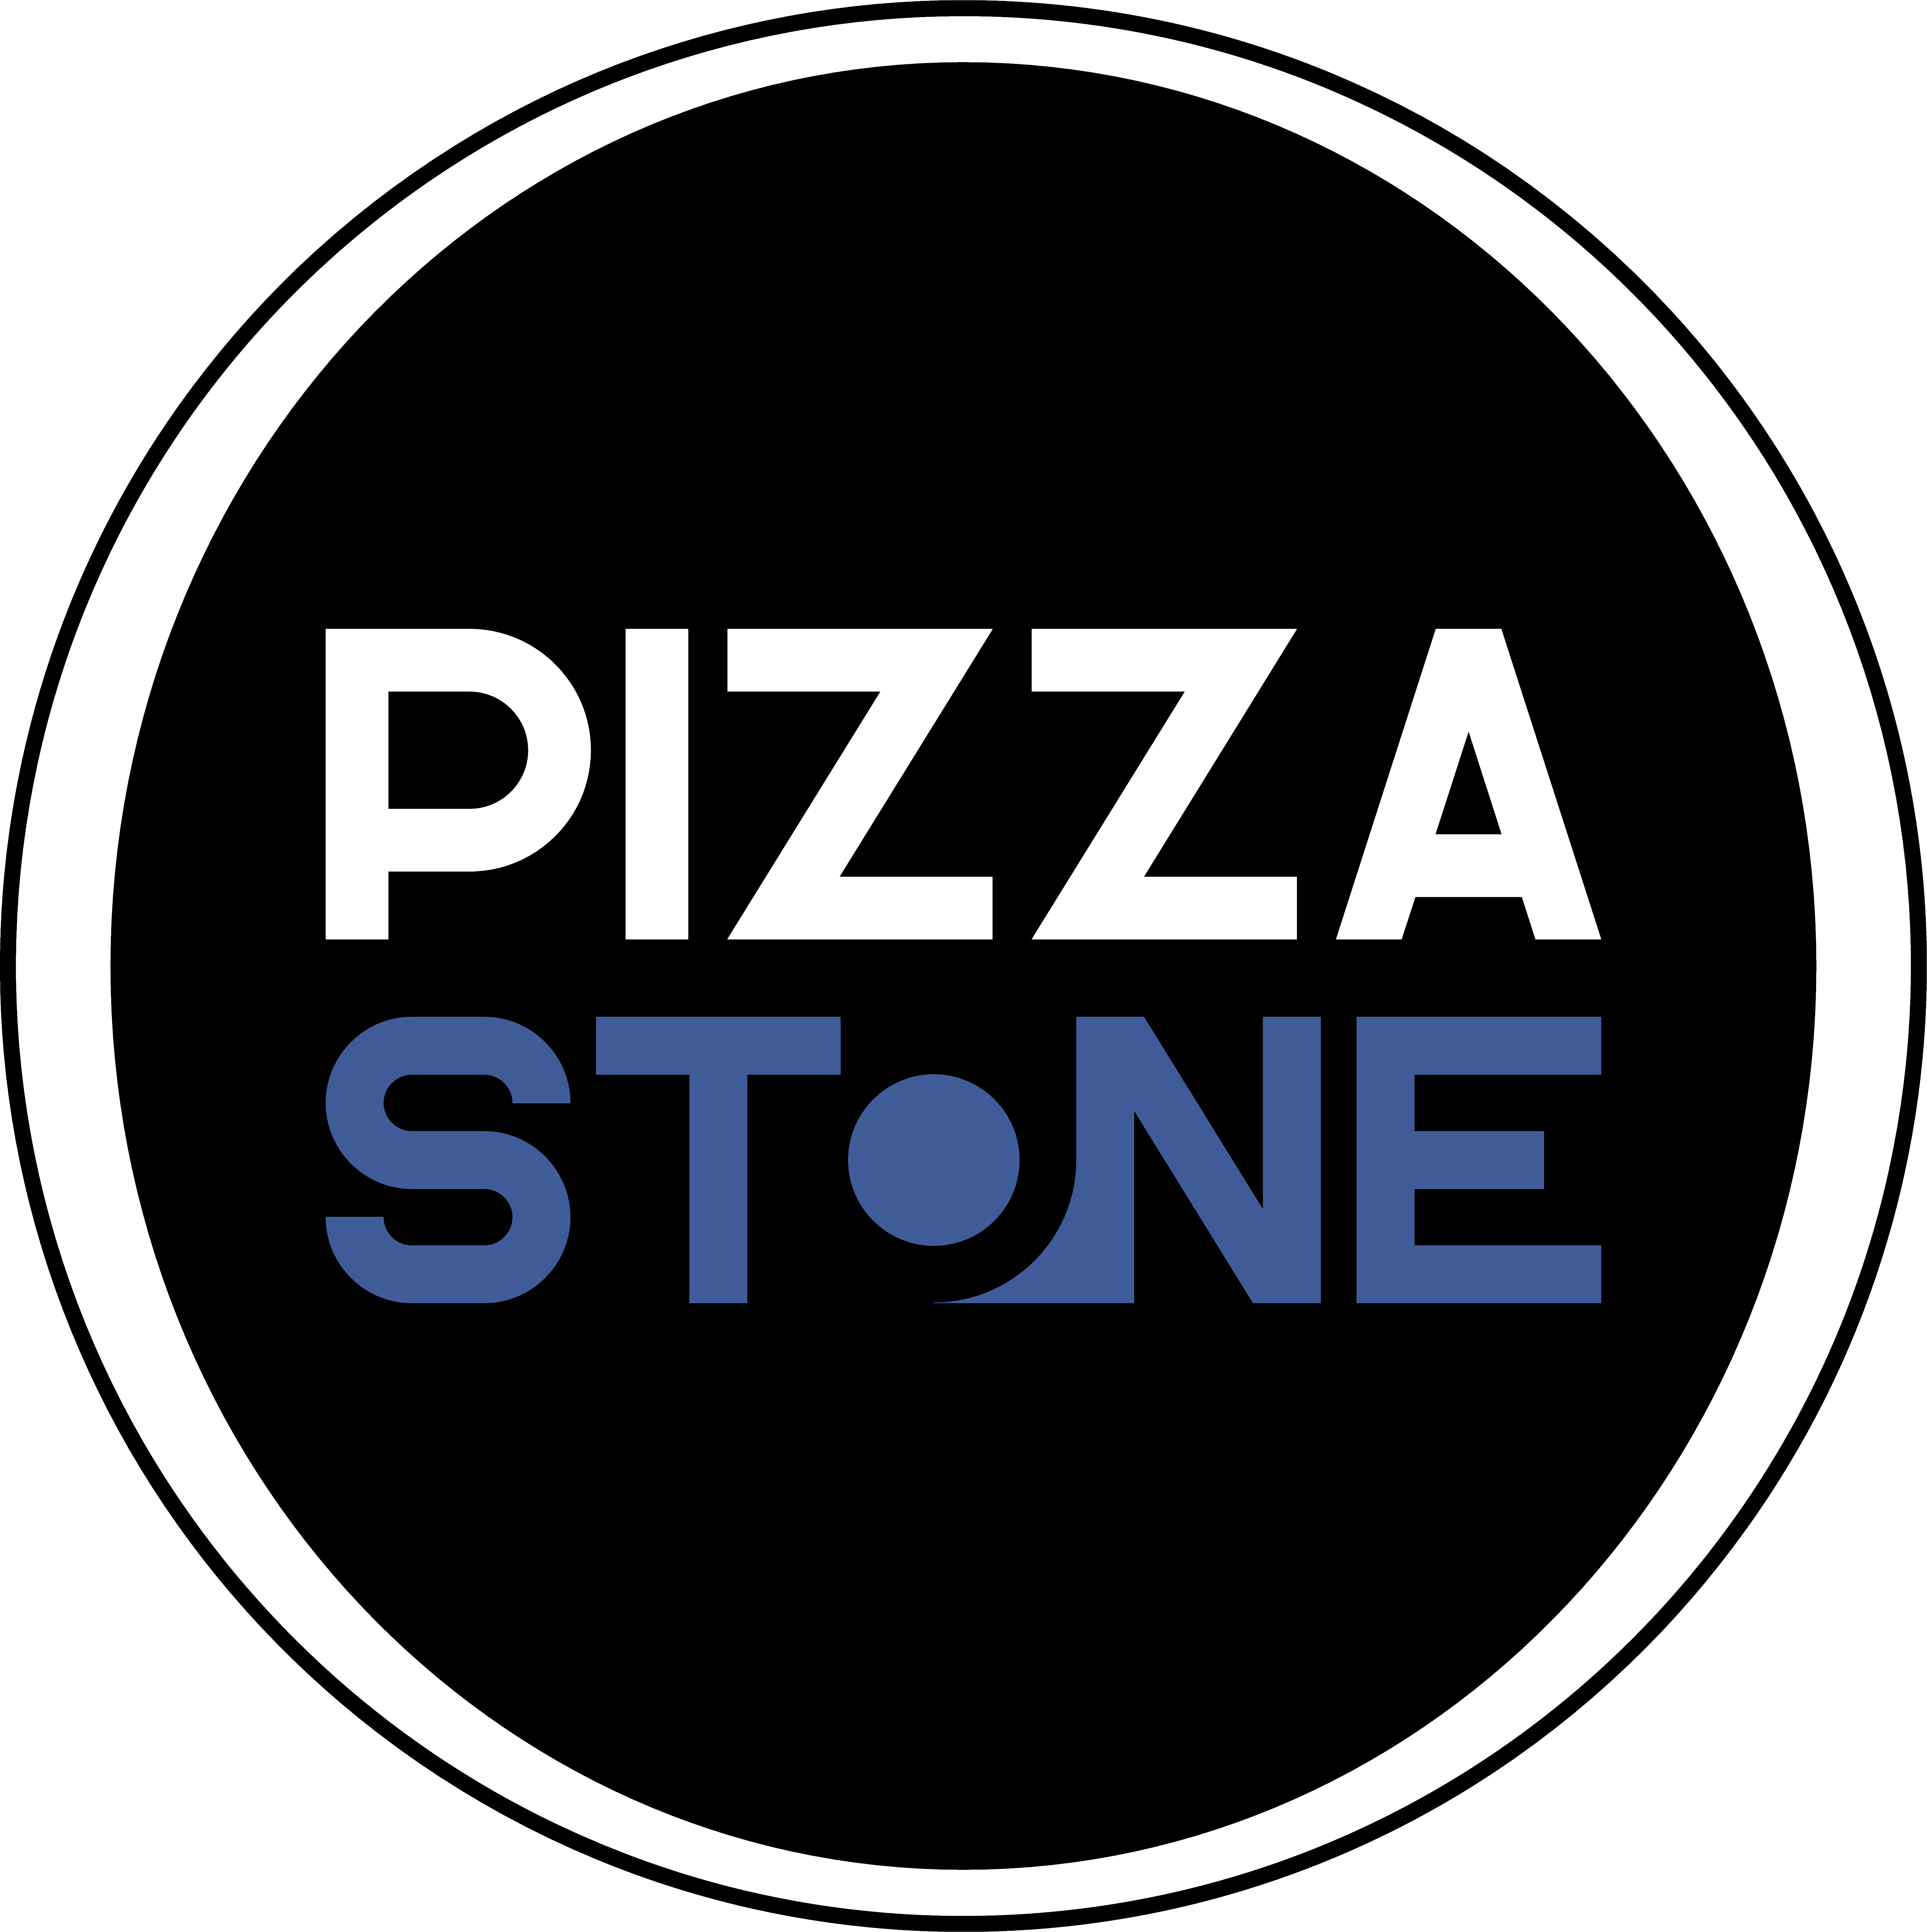 Pizza Stone 933 Pleasant Grove Blvd Suite 130